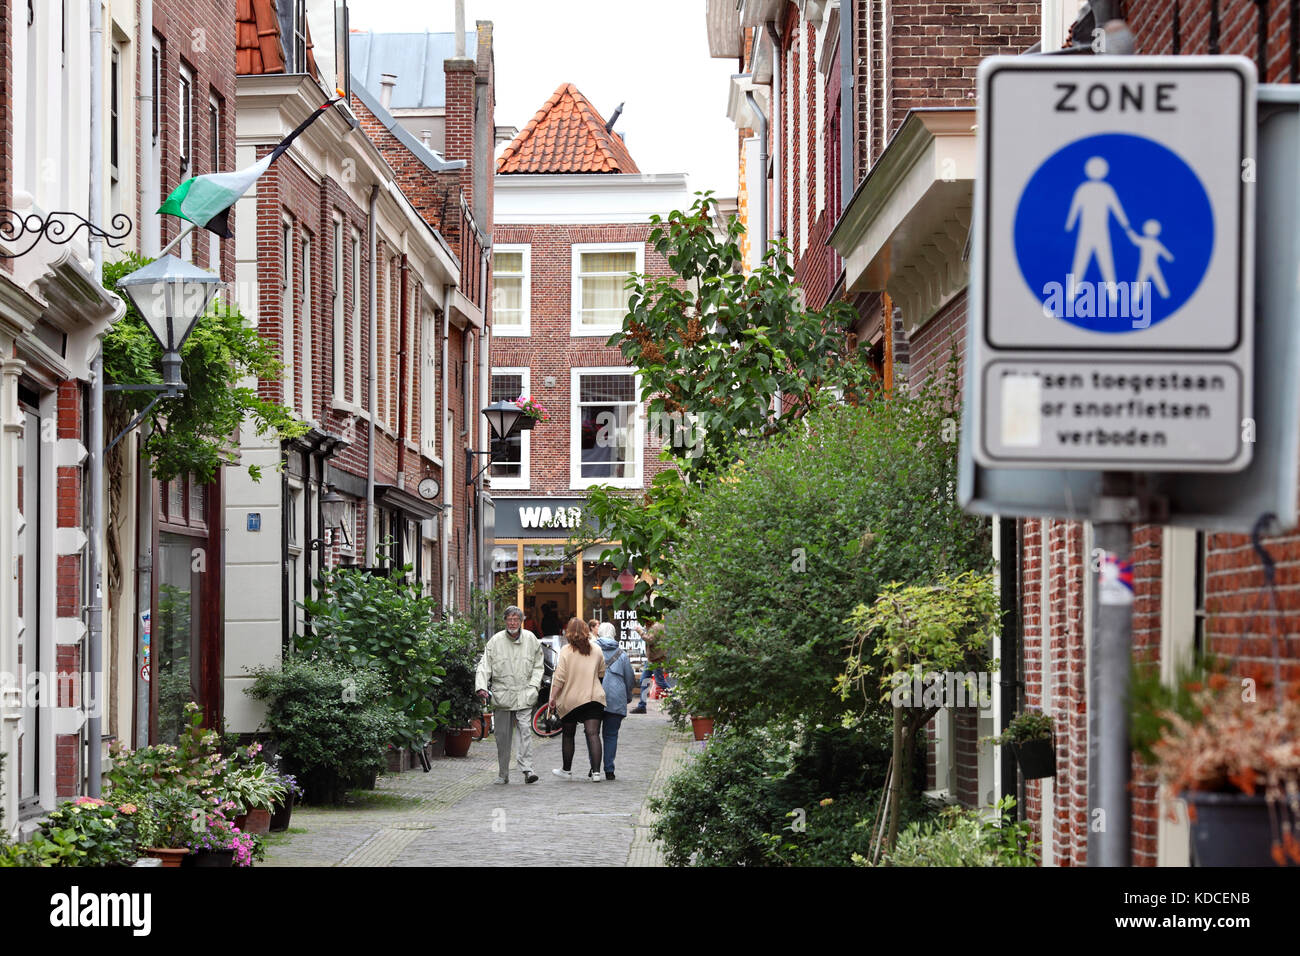 Une zone piétonne 'bleu' signe indique une rue de Haarlem, Hollande du Nord, aux Pays-Bas. Banque D'Images